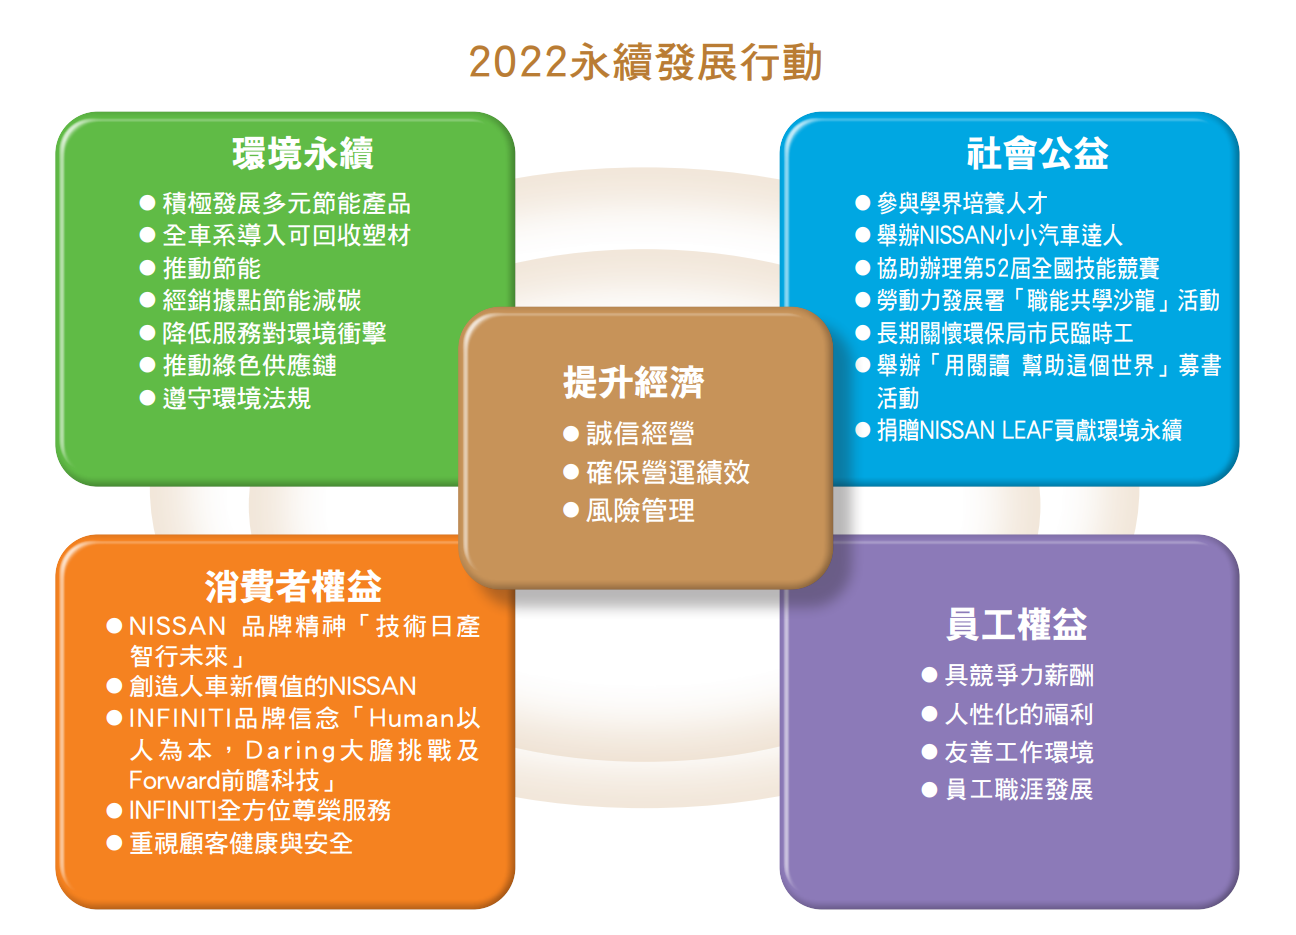 2022年度企業社會責任行動